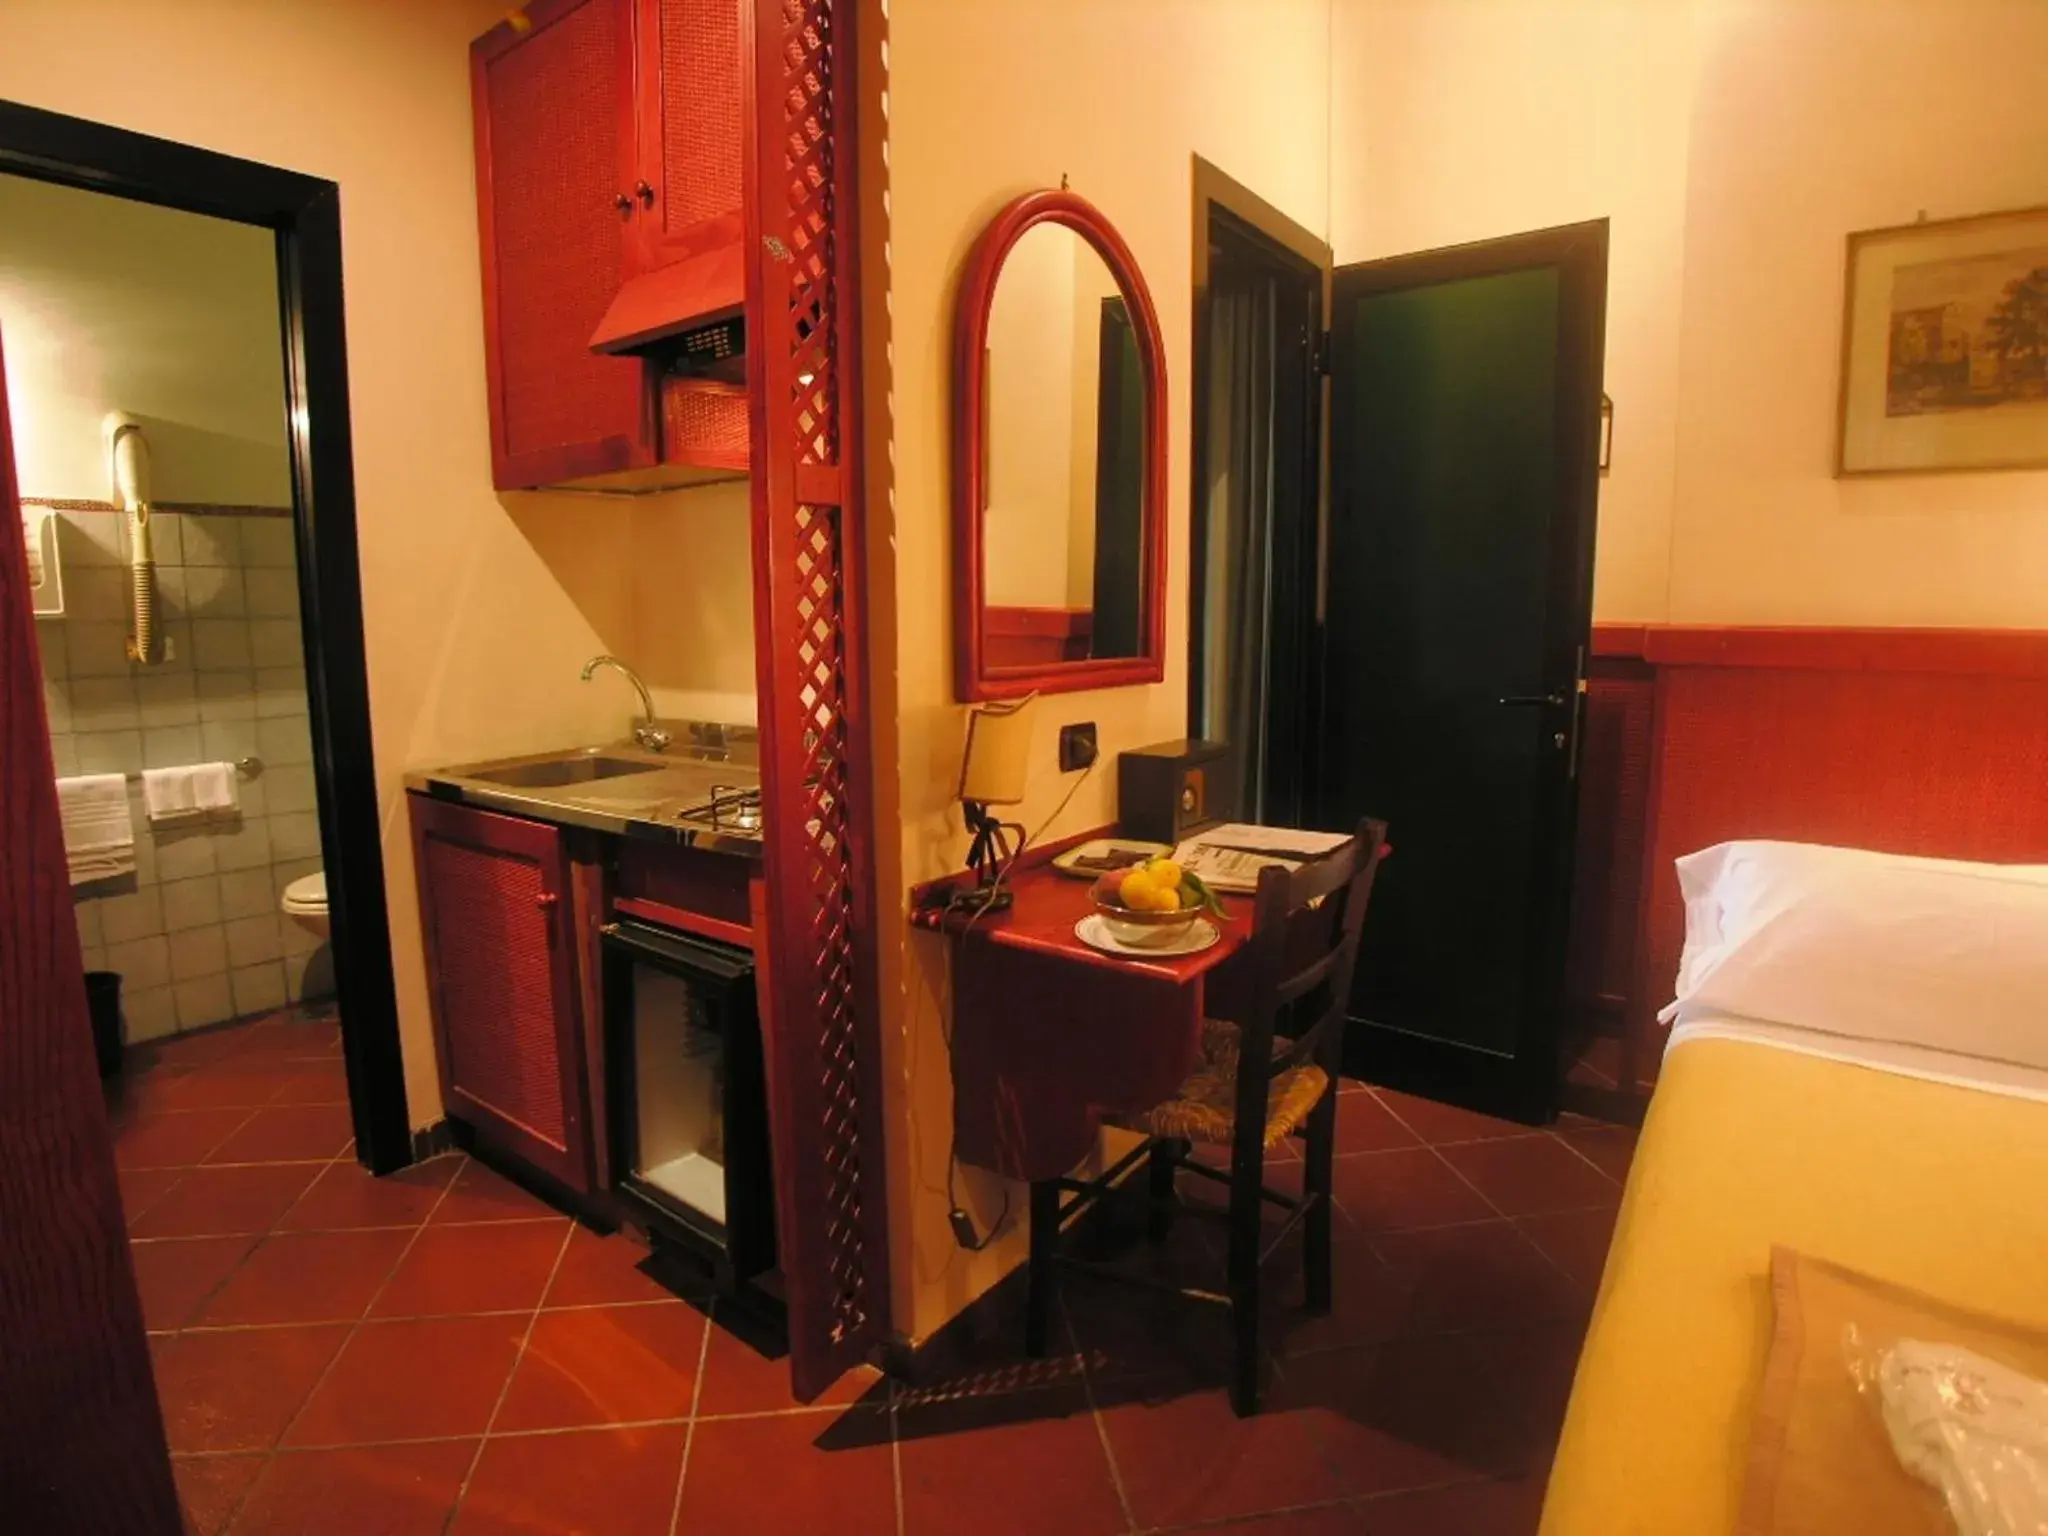 Kitchen or kitchenette, Bathroom in Toledo Hotel